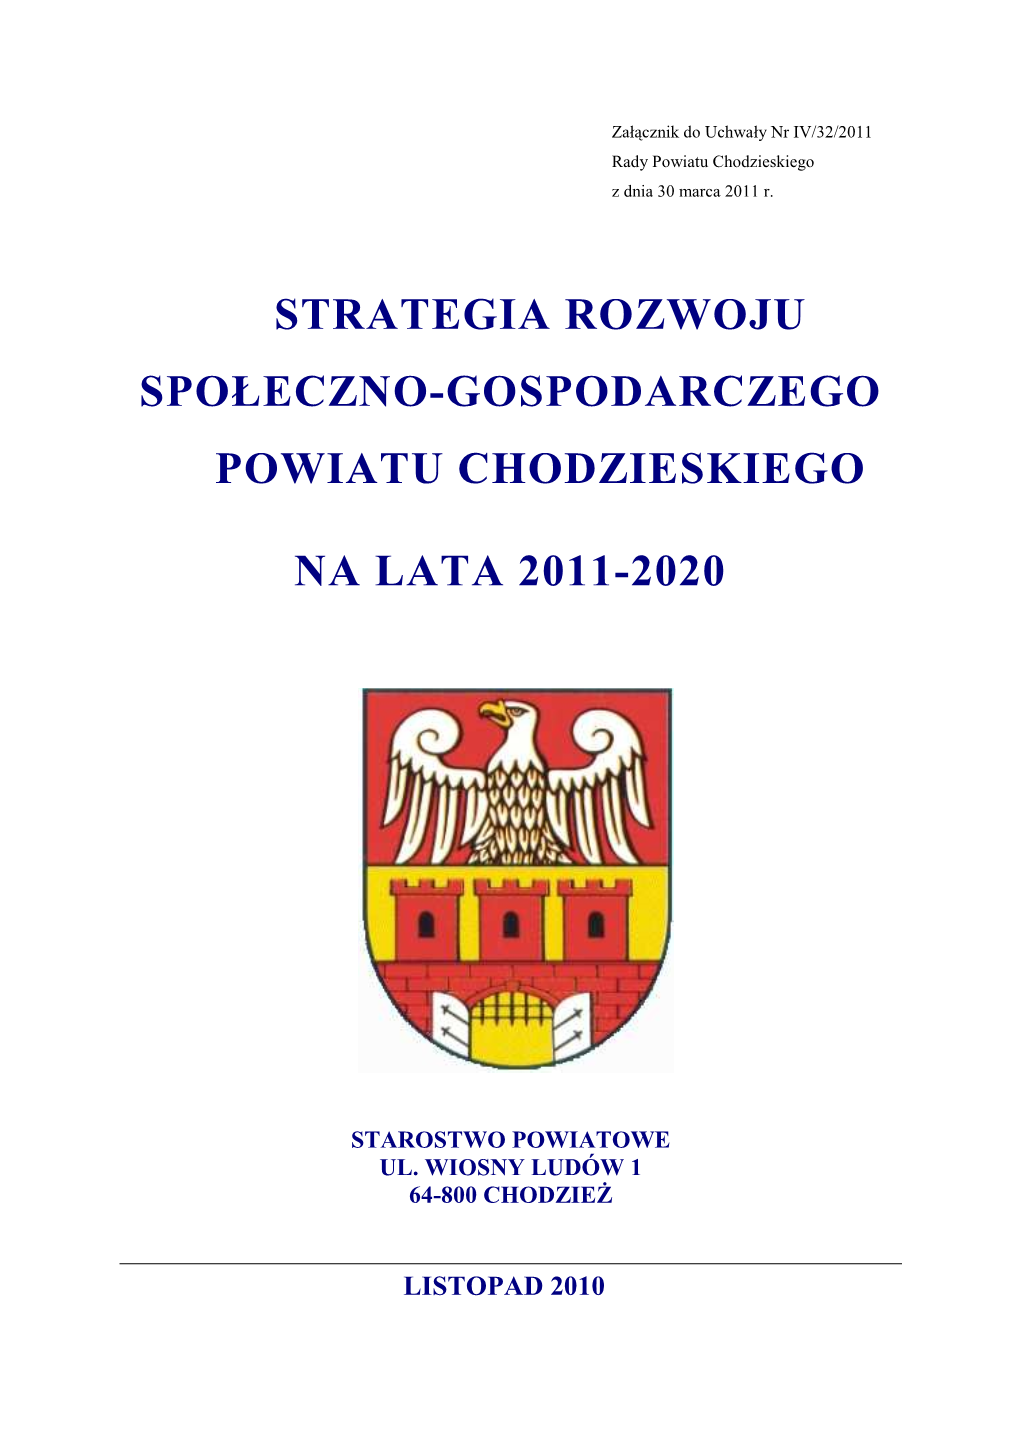 Strategia Pow. Chodz. 2011-2020